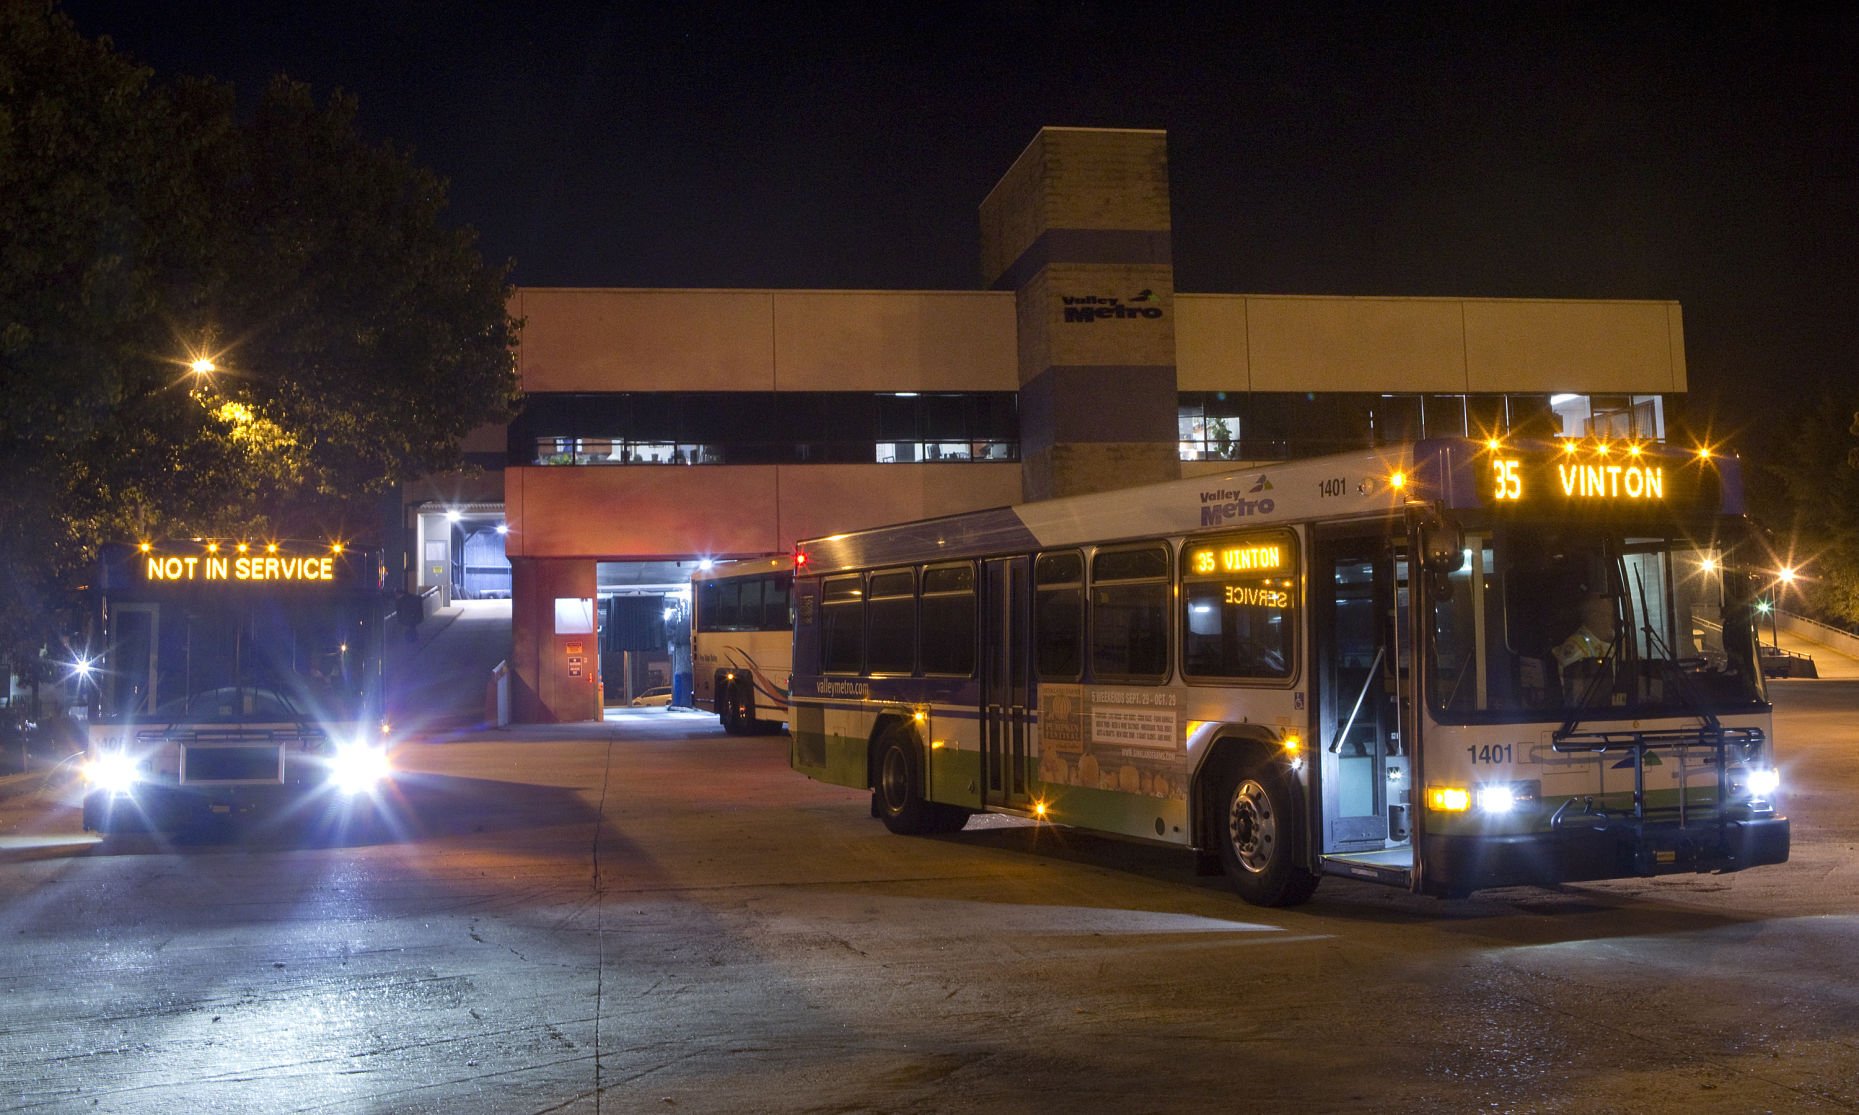 valley metro bus schedules